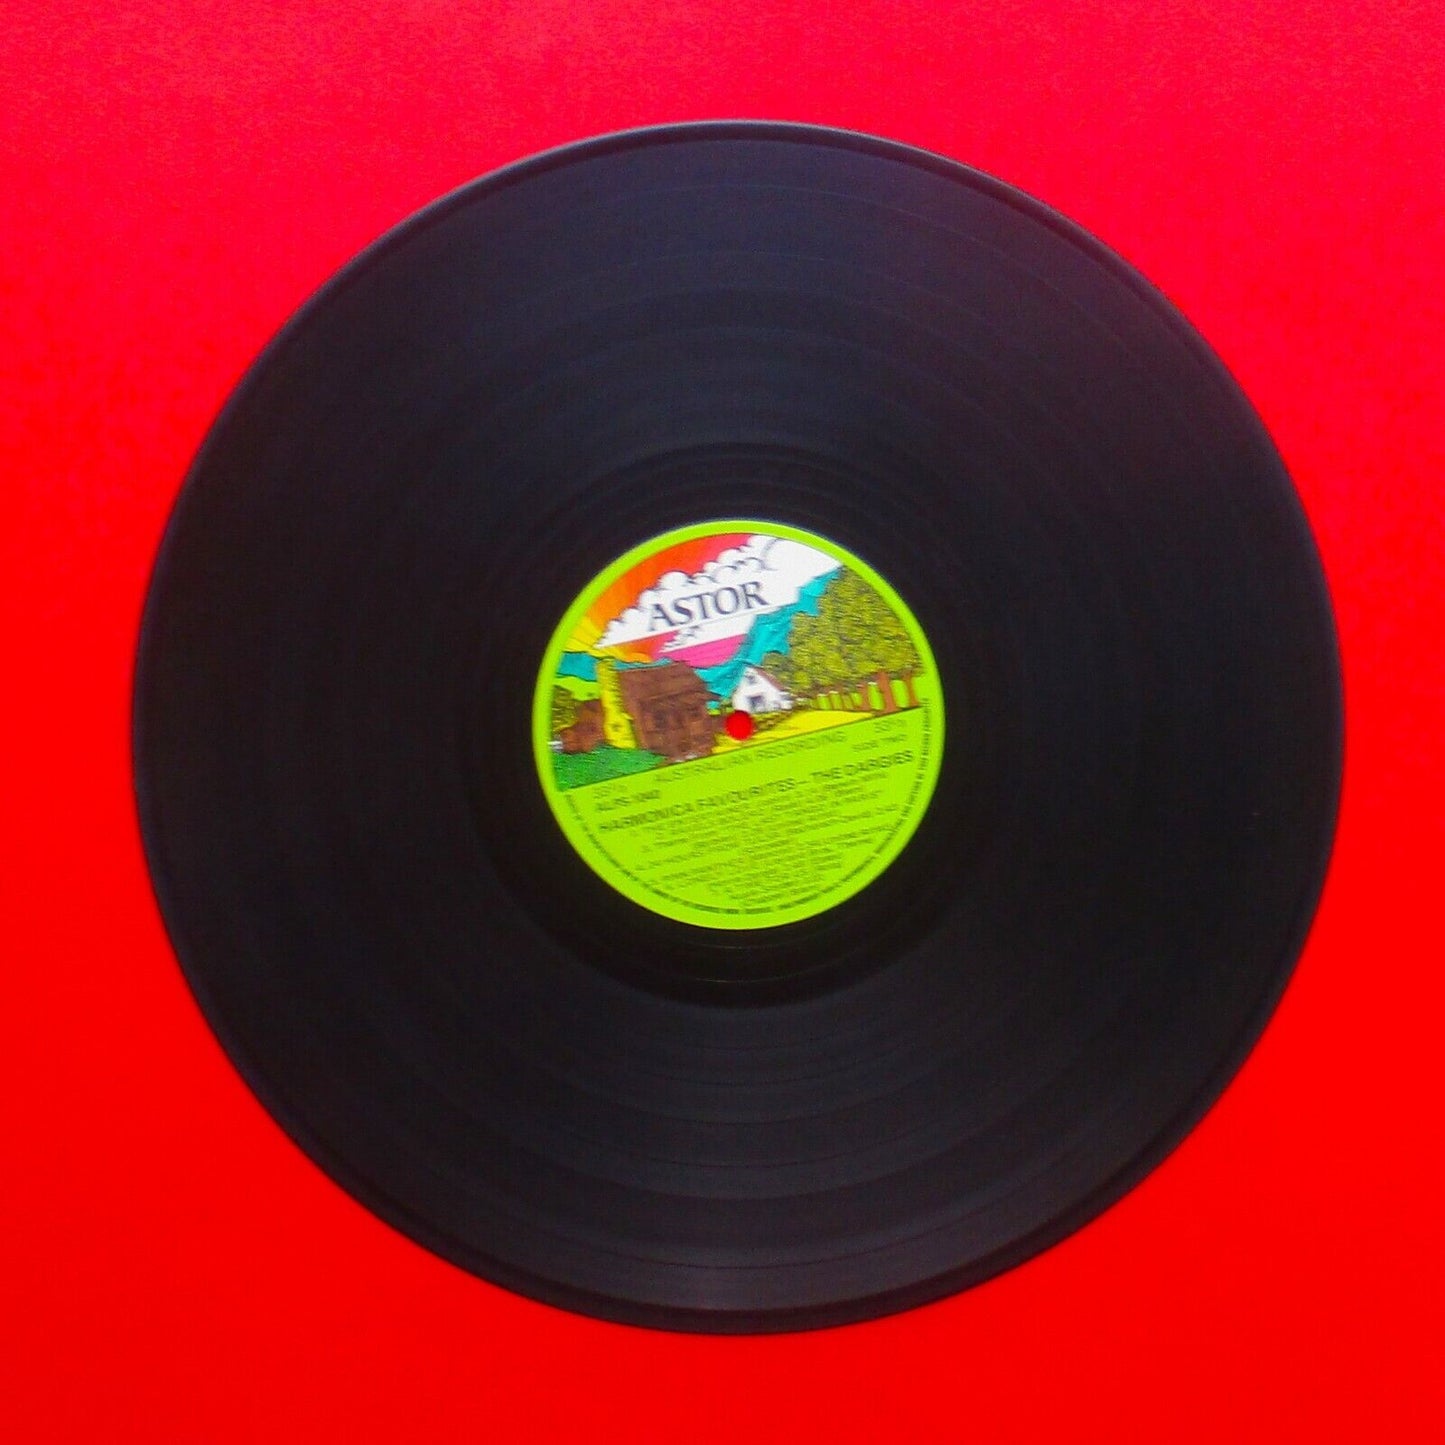 The Dargies ‎Harmonica Favourites Vinyl Album LP 1974 Australian Pressing